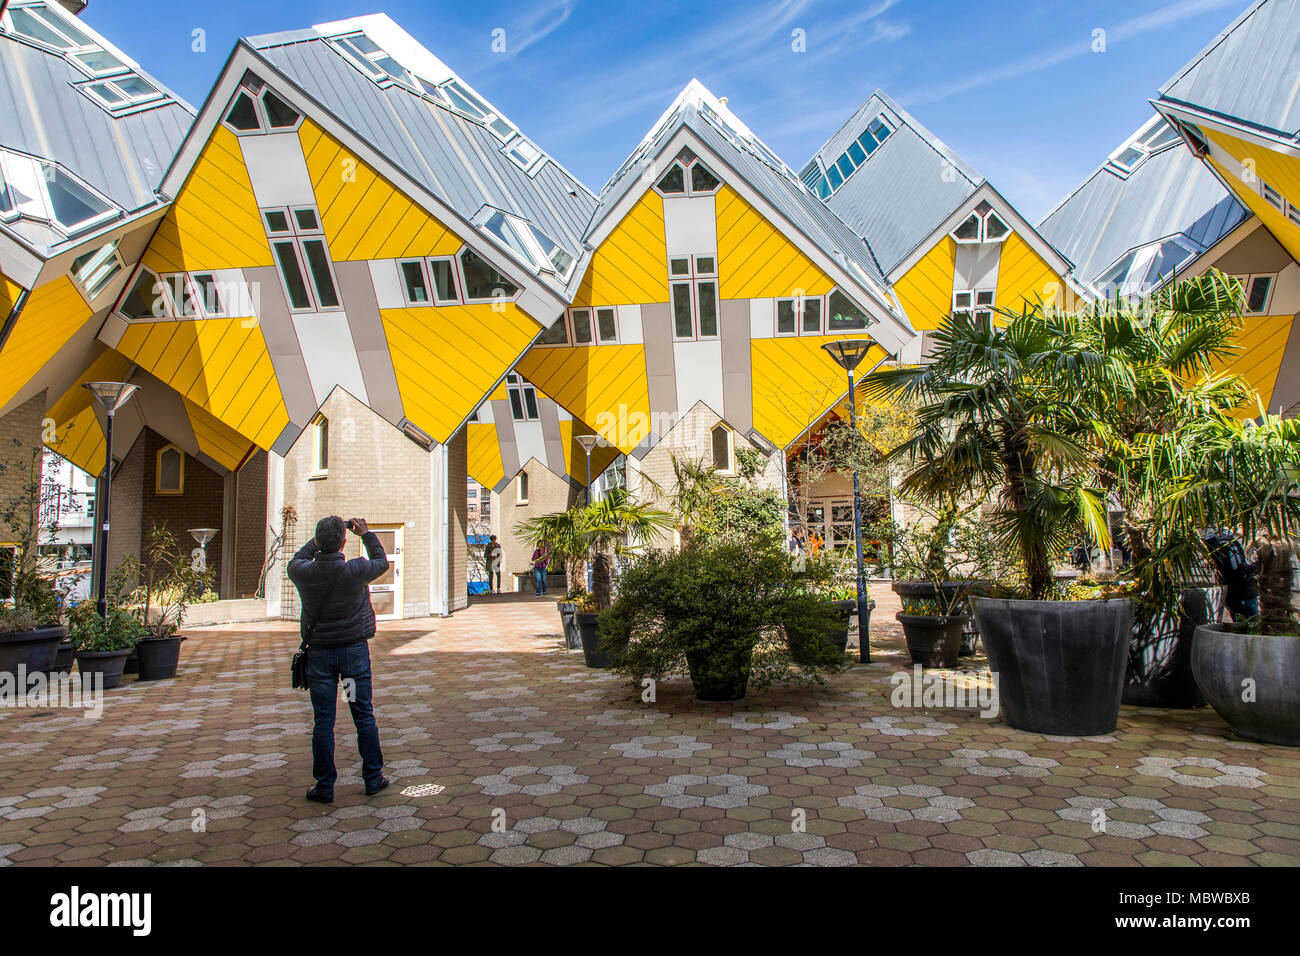 Downtown, Blaak Square, Kubus edificio residenziale e Kijk Kubus a forma di cubo case, Paesi Bassi, dall'architetto olandese Piet Blom Foto Stock